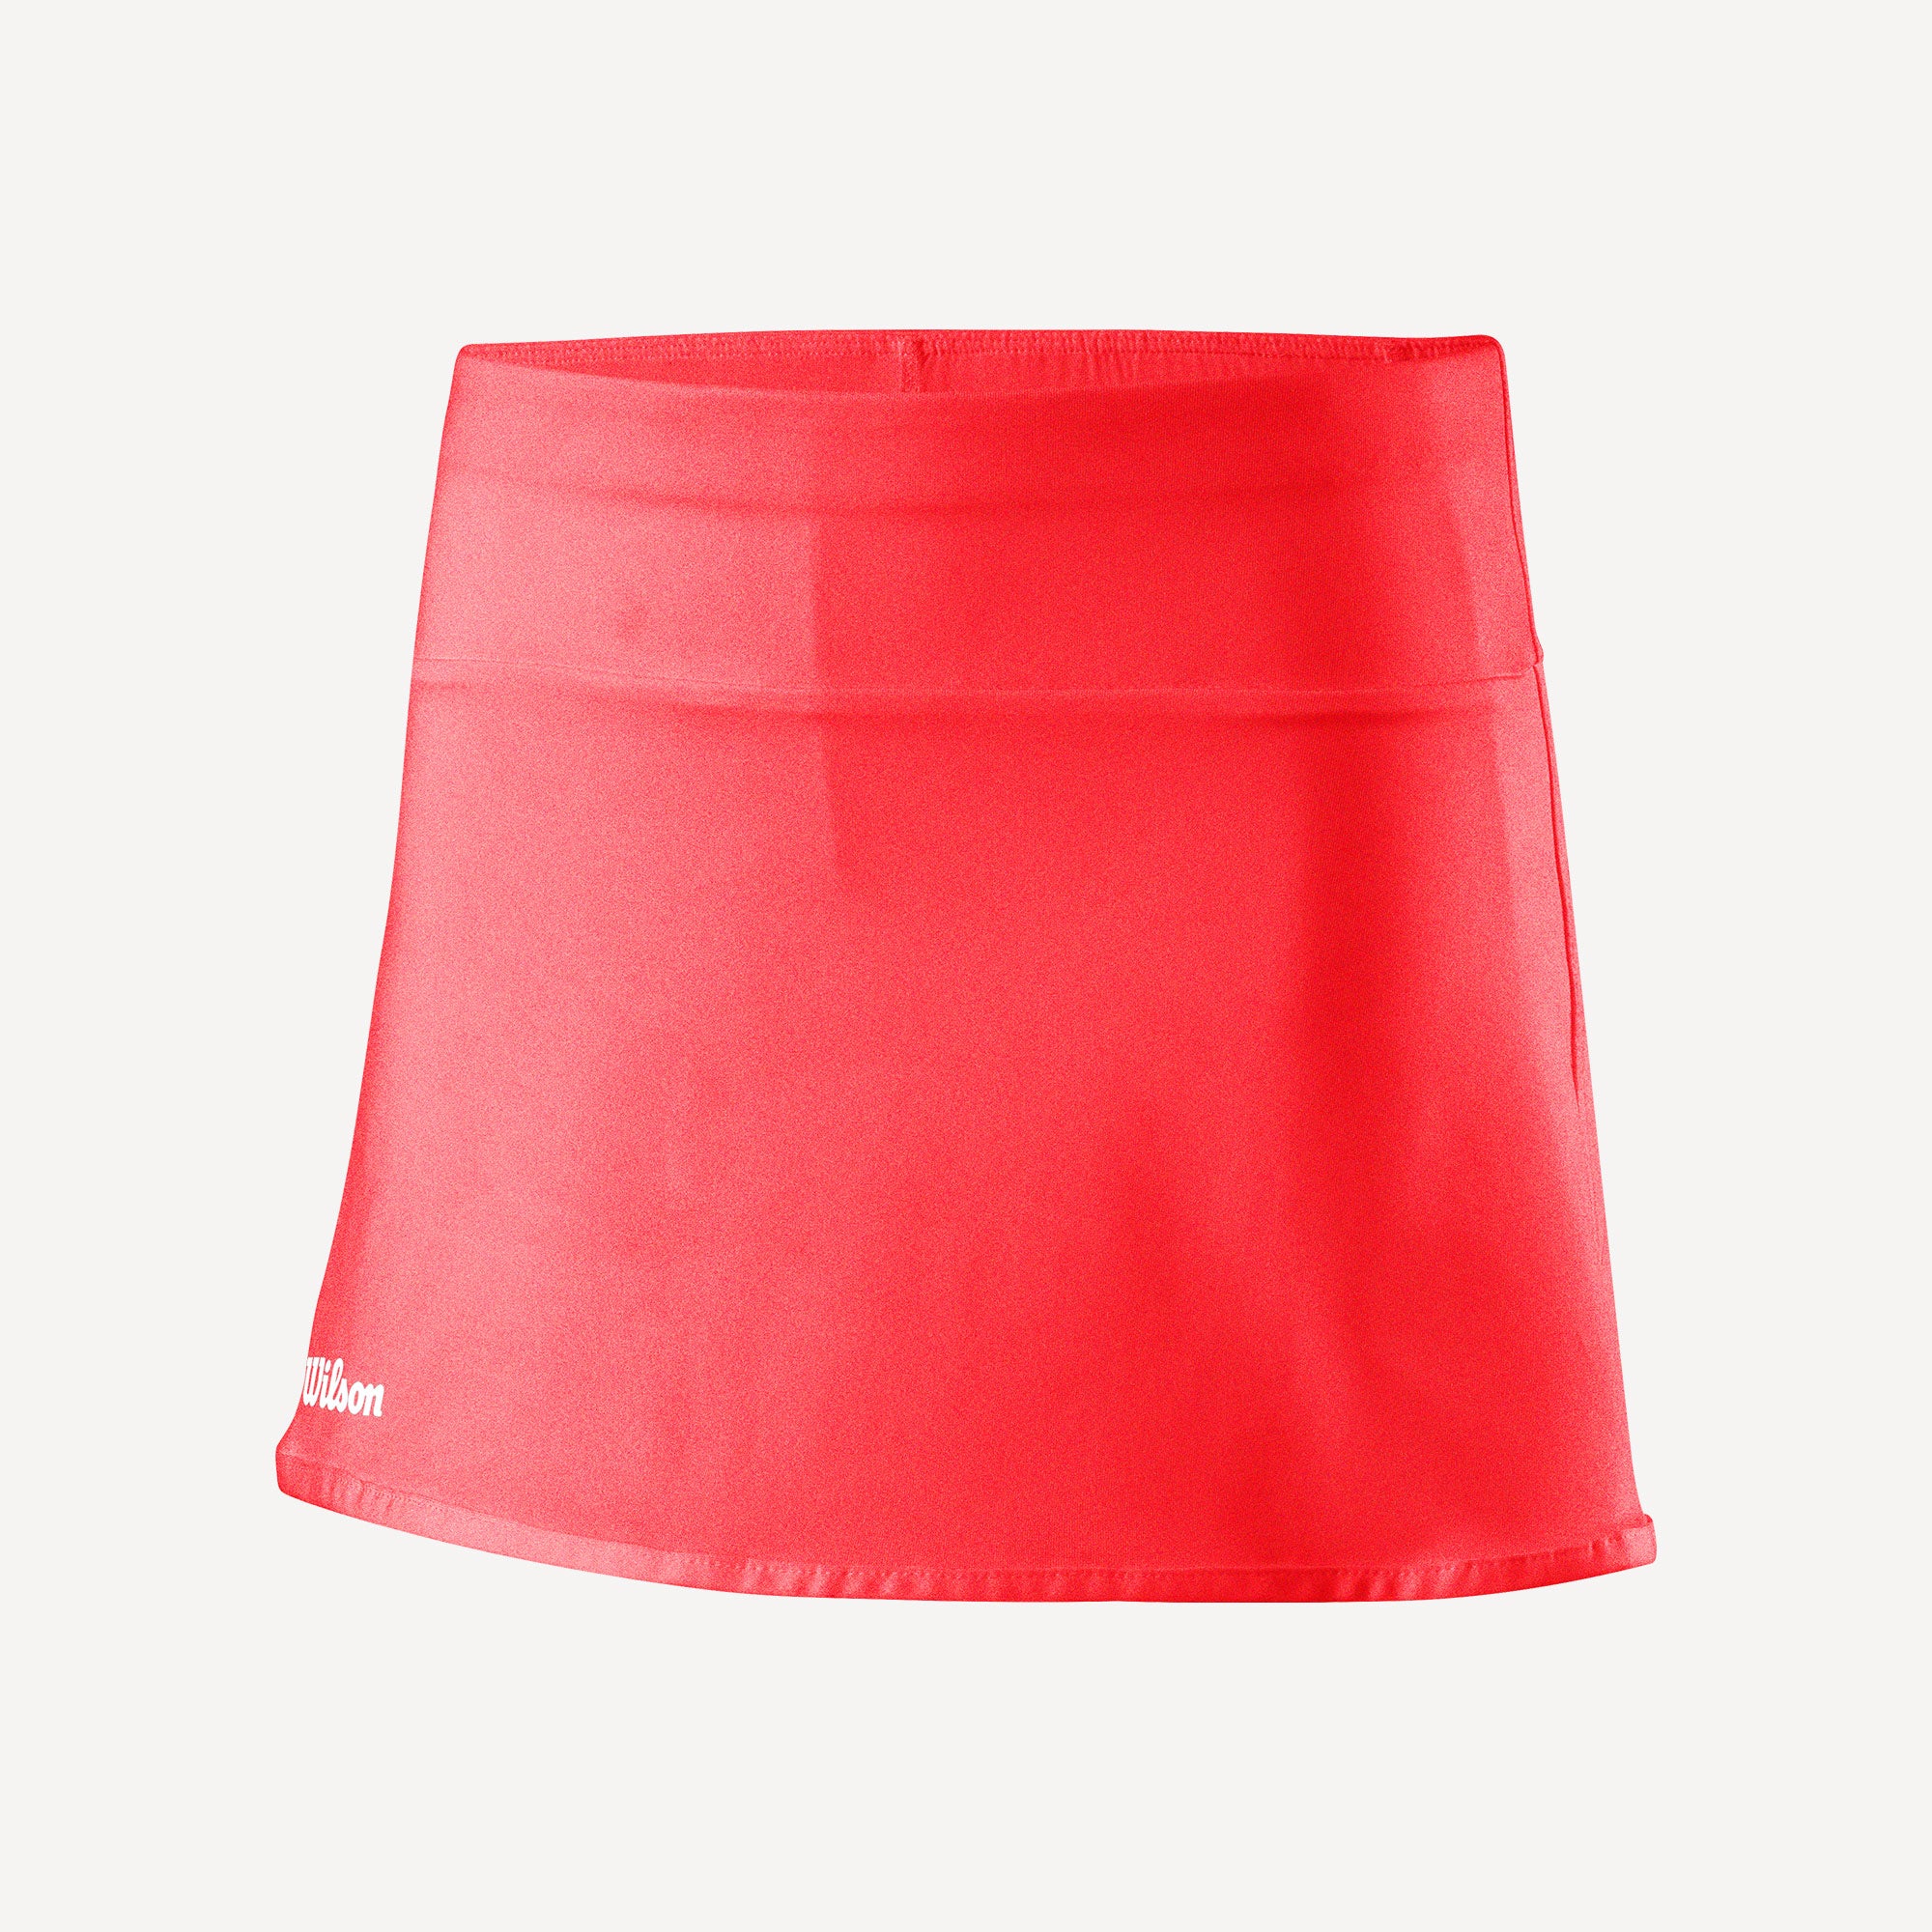 Wilson Team 2 Girls' 11-Inch Tennis Skirt Orange (1)